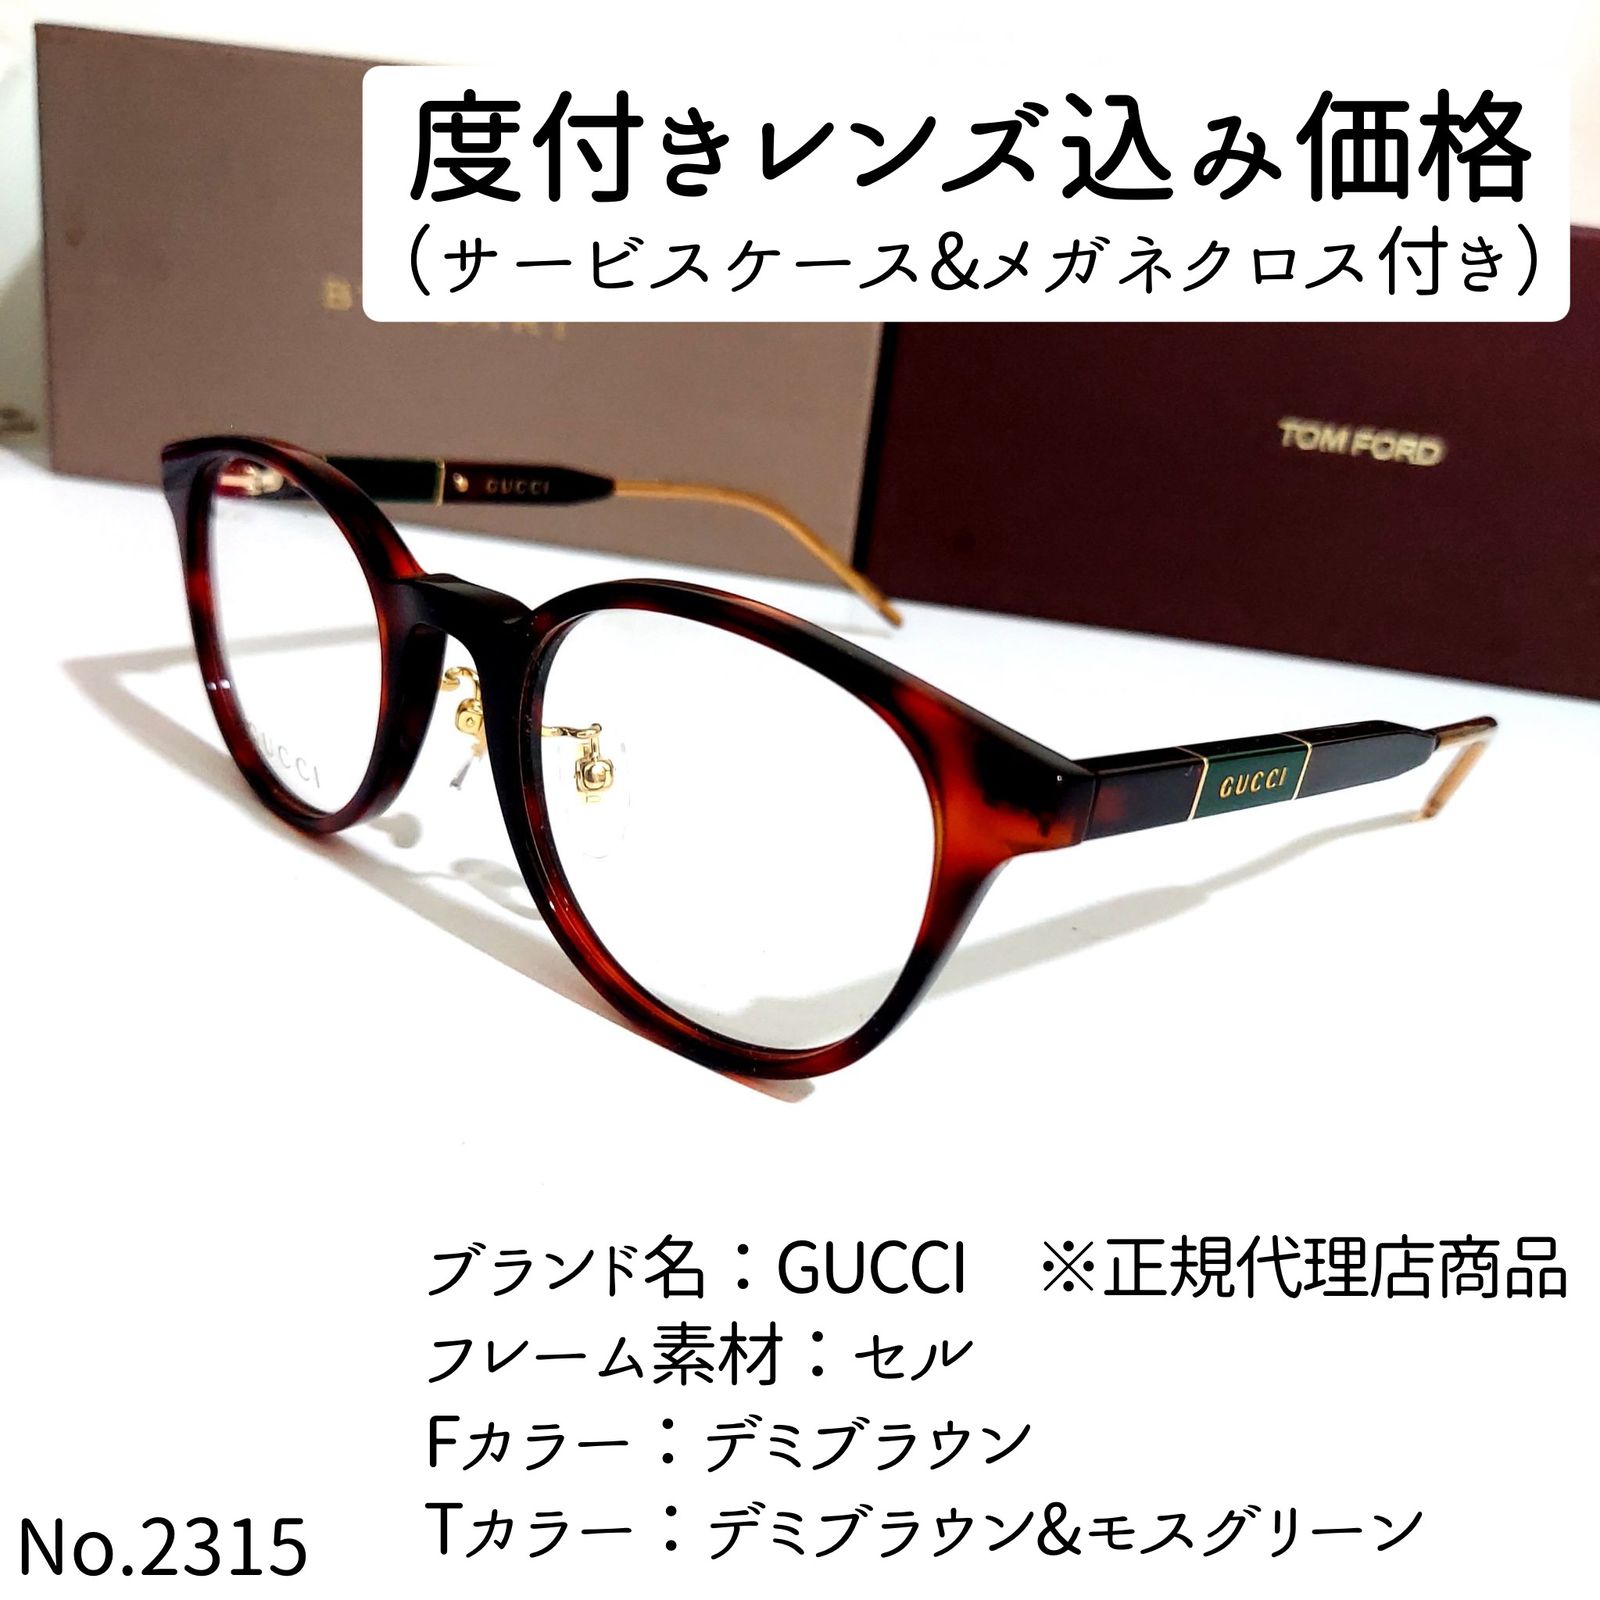 シリーズ No.2317+メガネ GUCCI ※正規代理店商品【度数入り込み価格